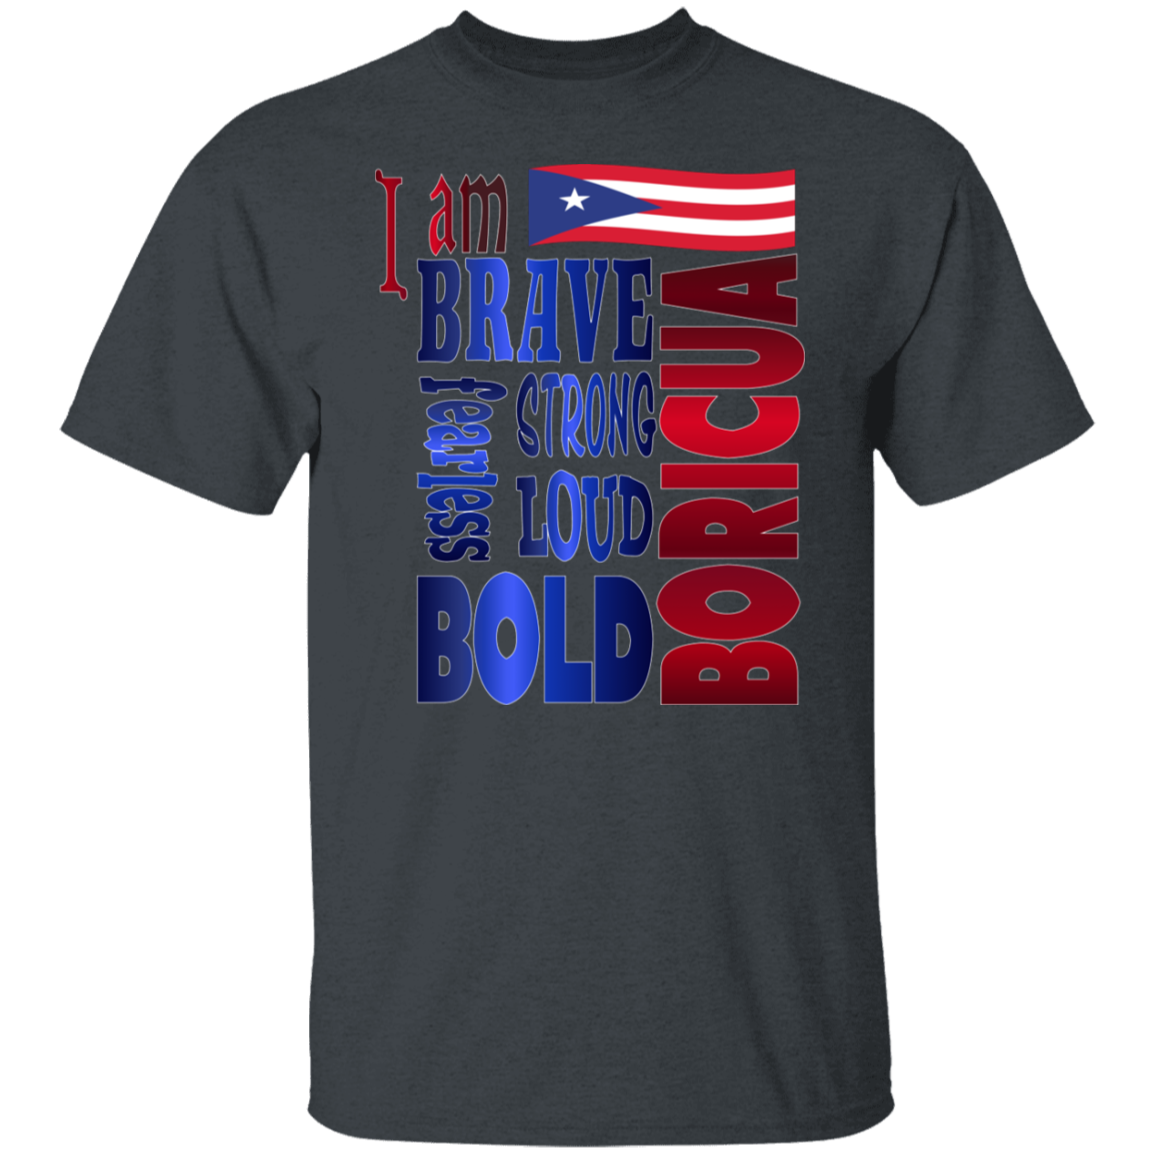 I am Boricua - 5.3 oz. T-Shirt